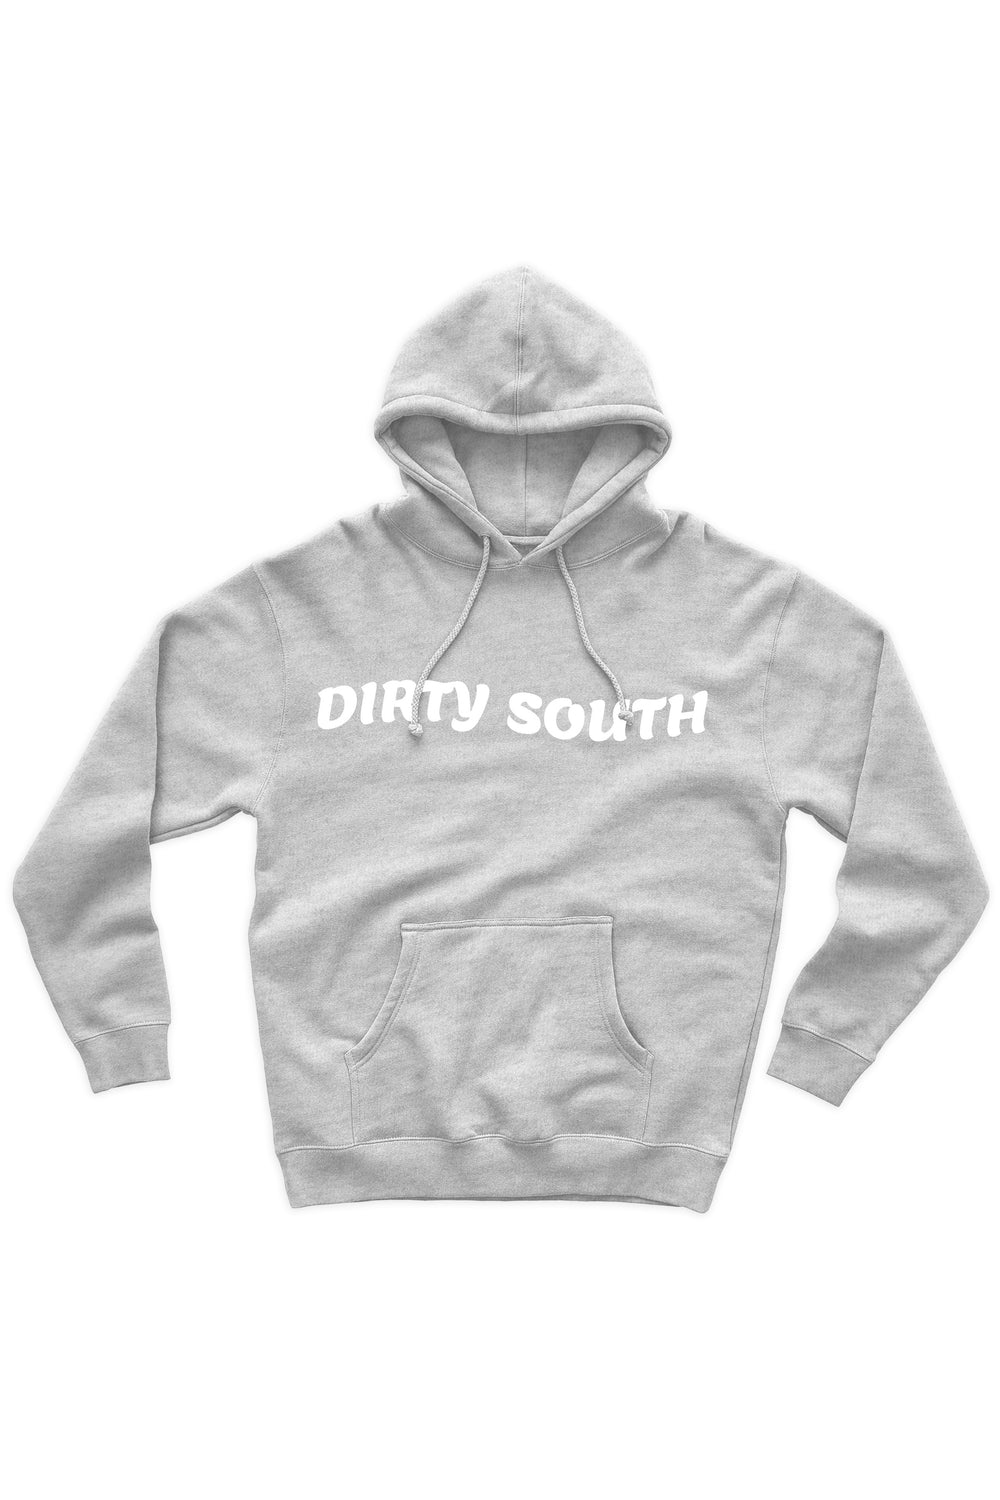 Dirty South Hoodie (White Logo) - Zamage